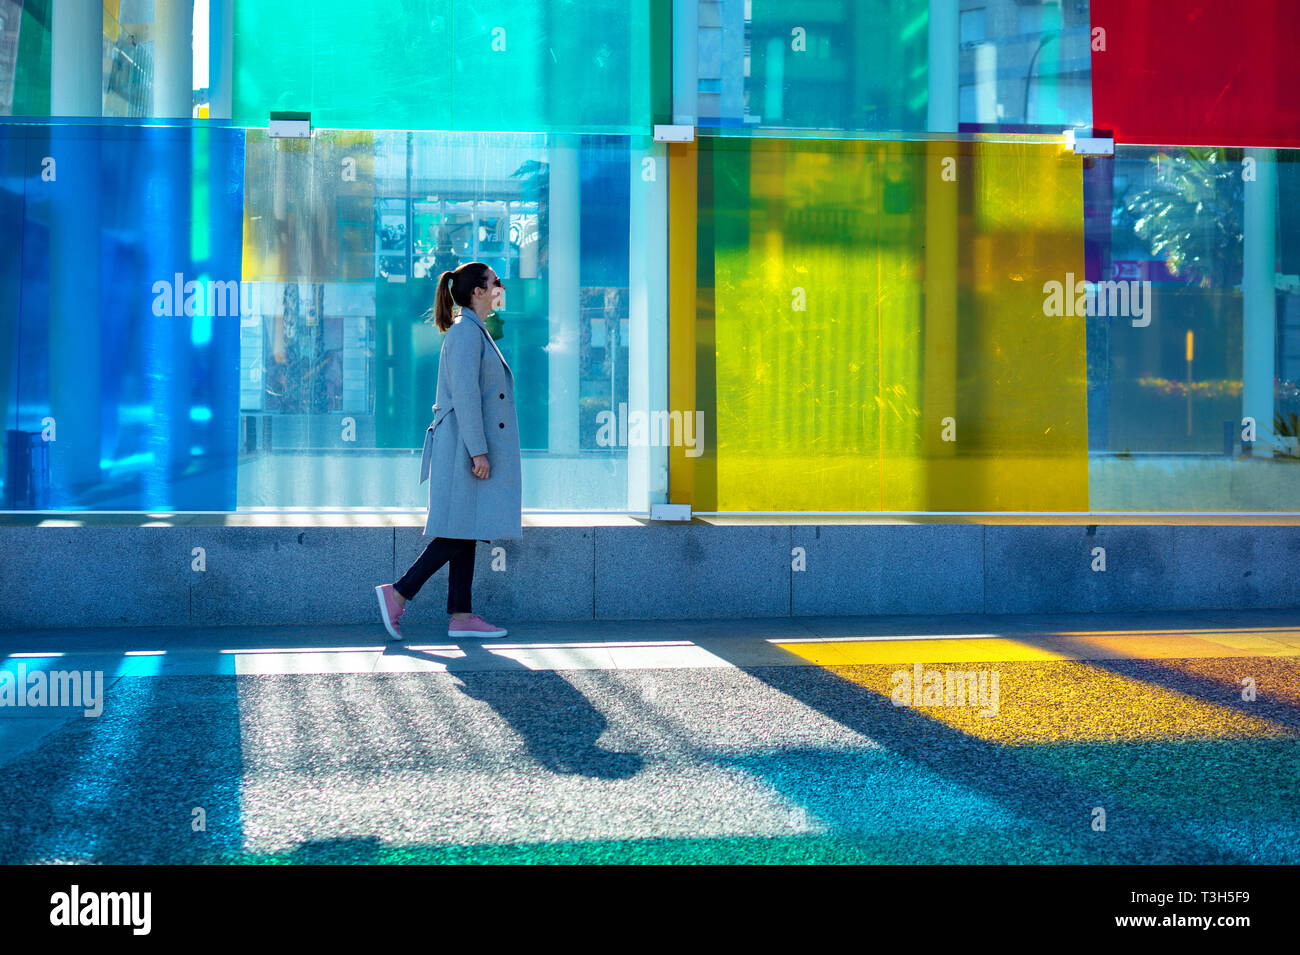 Espagne, Malaga - 04.04.2019 : femme marche à côté du cube coloré Centre Pompidou à Malaga, Espagne en soleil Banque D'Images